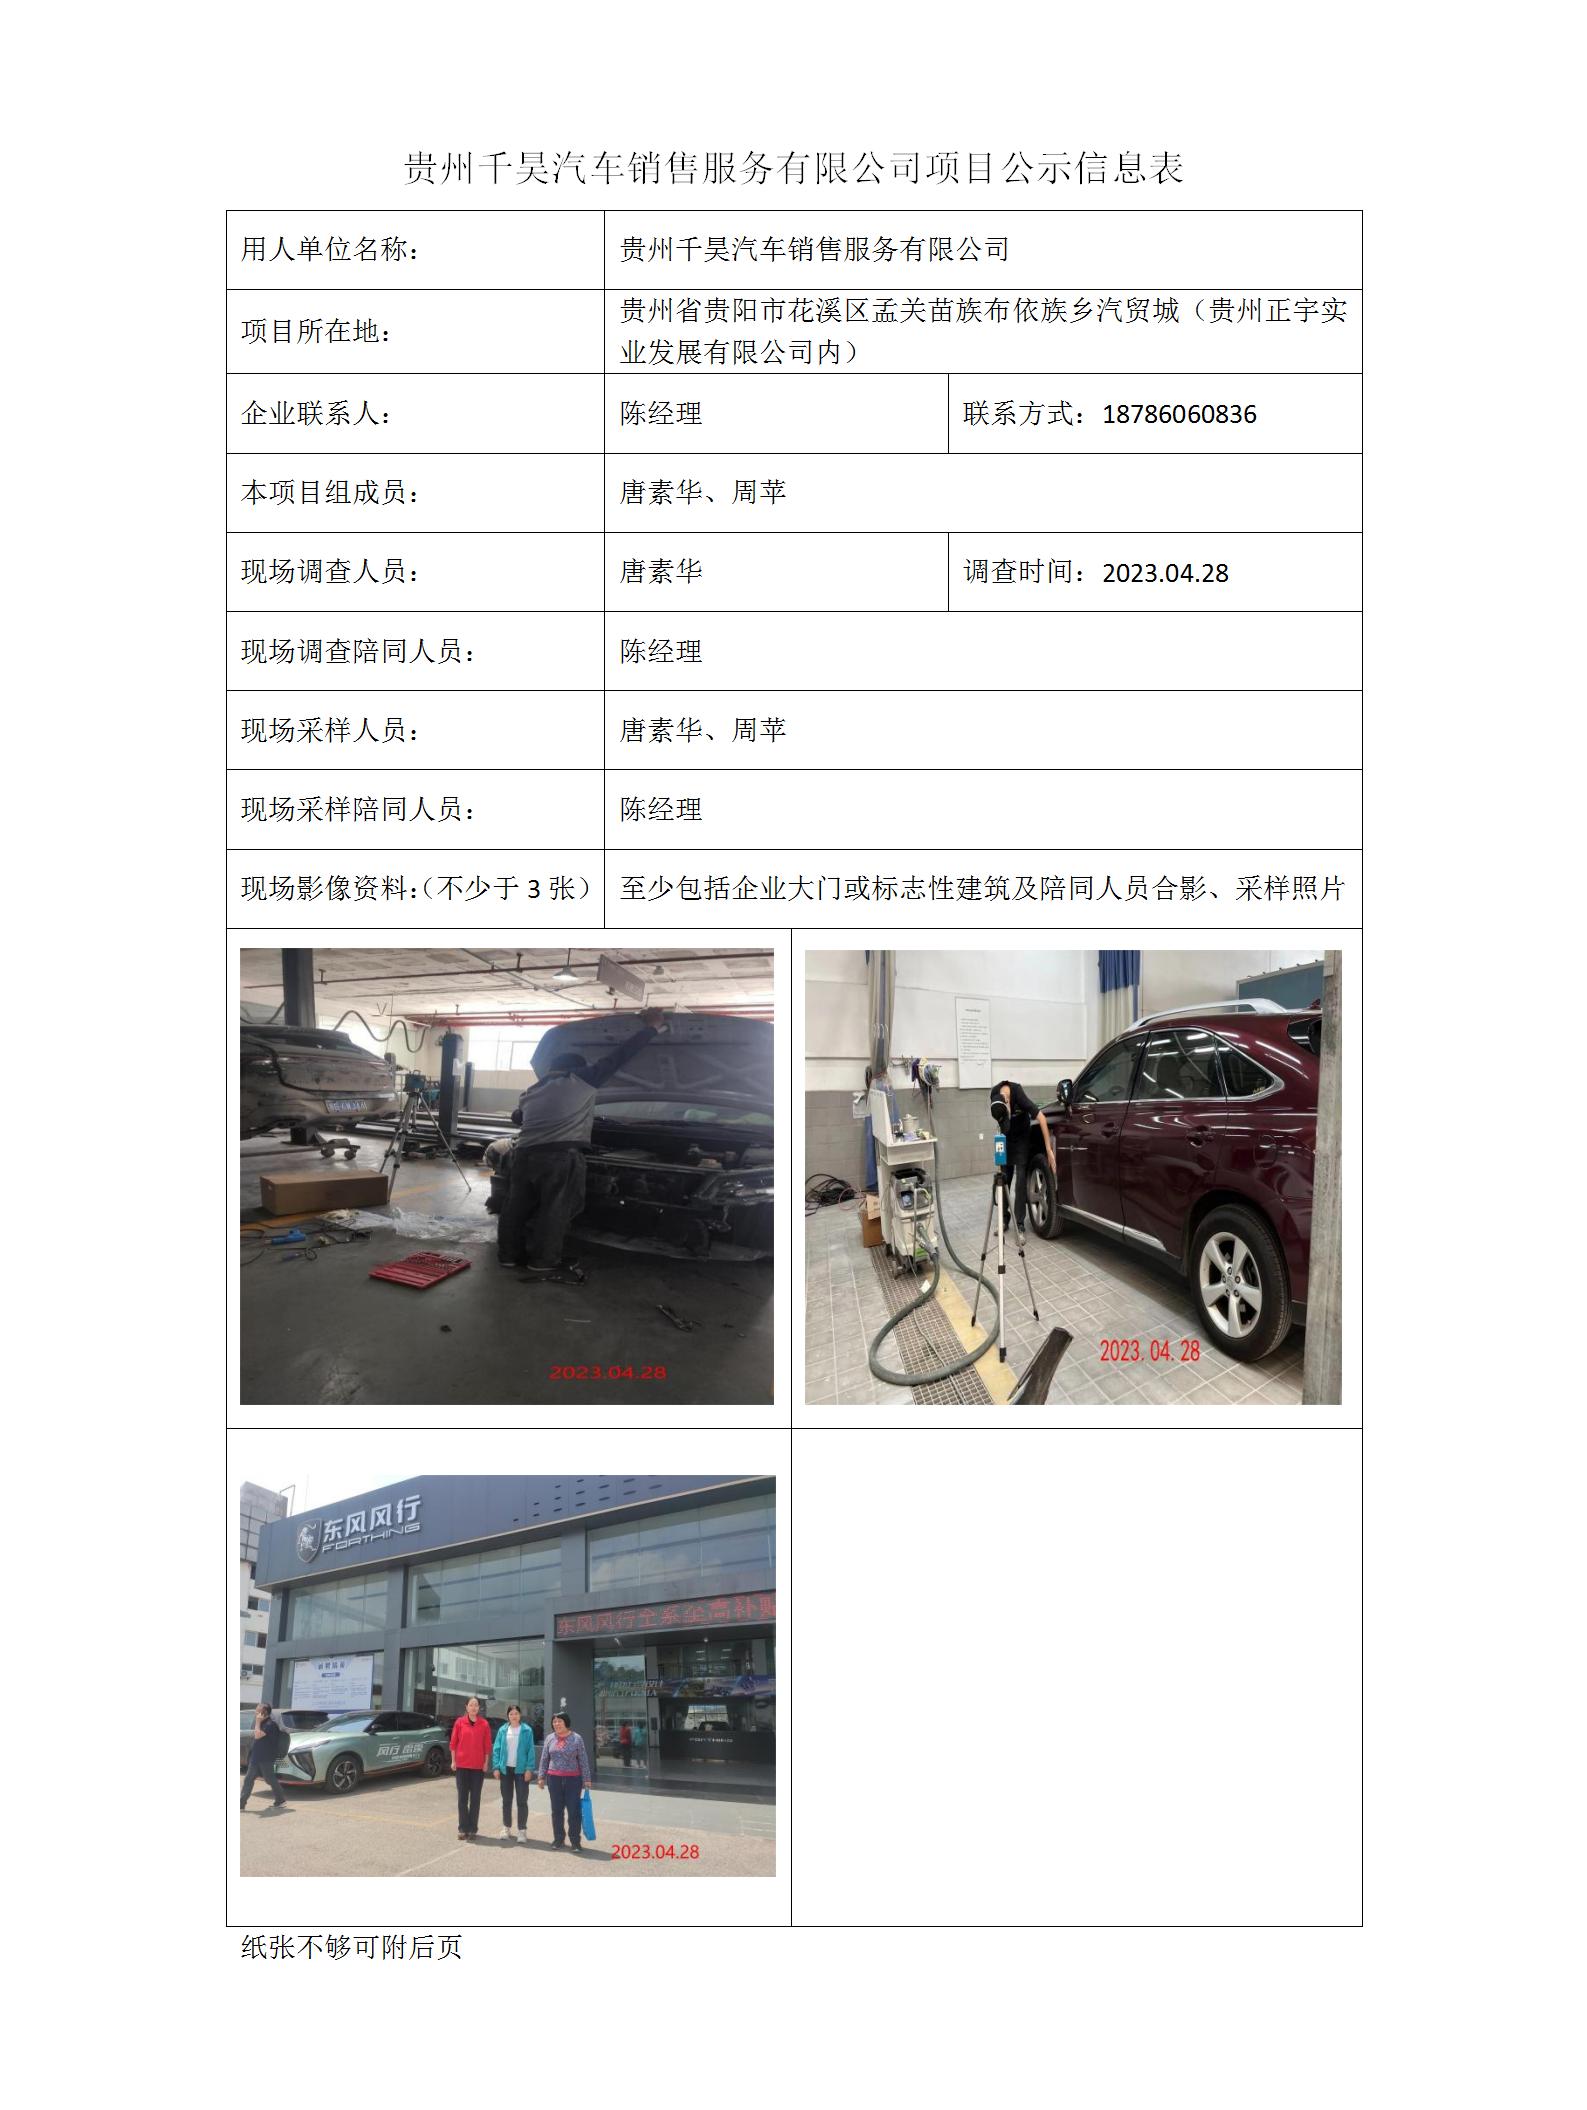 贵州千昊汽车销售服务有限公司项目公示信息表_01.jpg